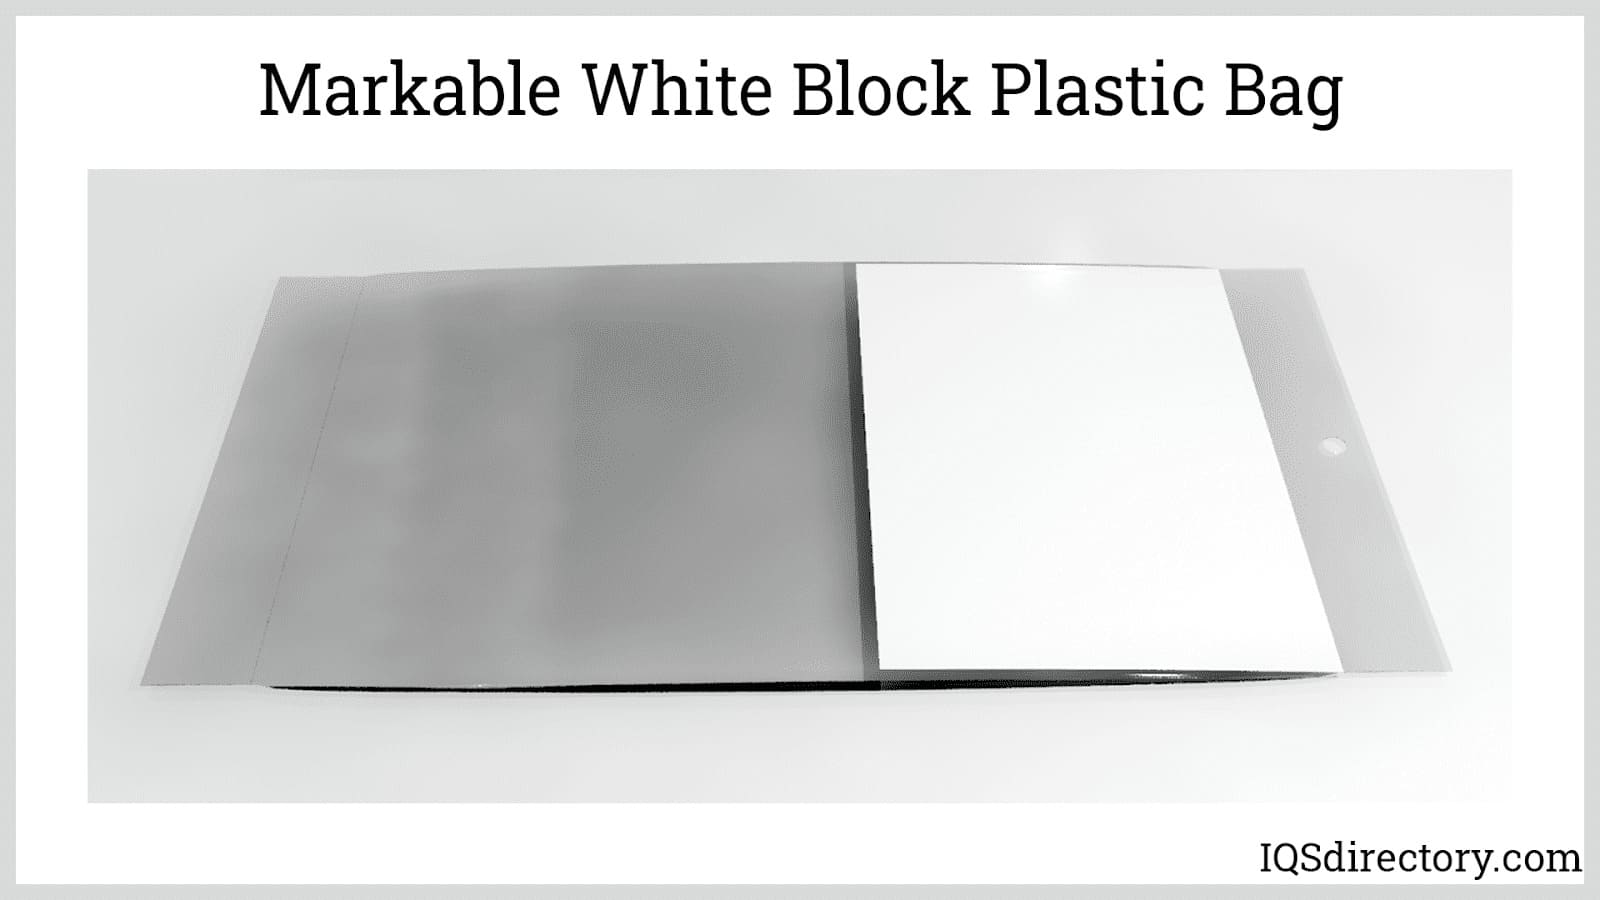 Markable White Block Plastic Bag